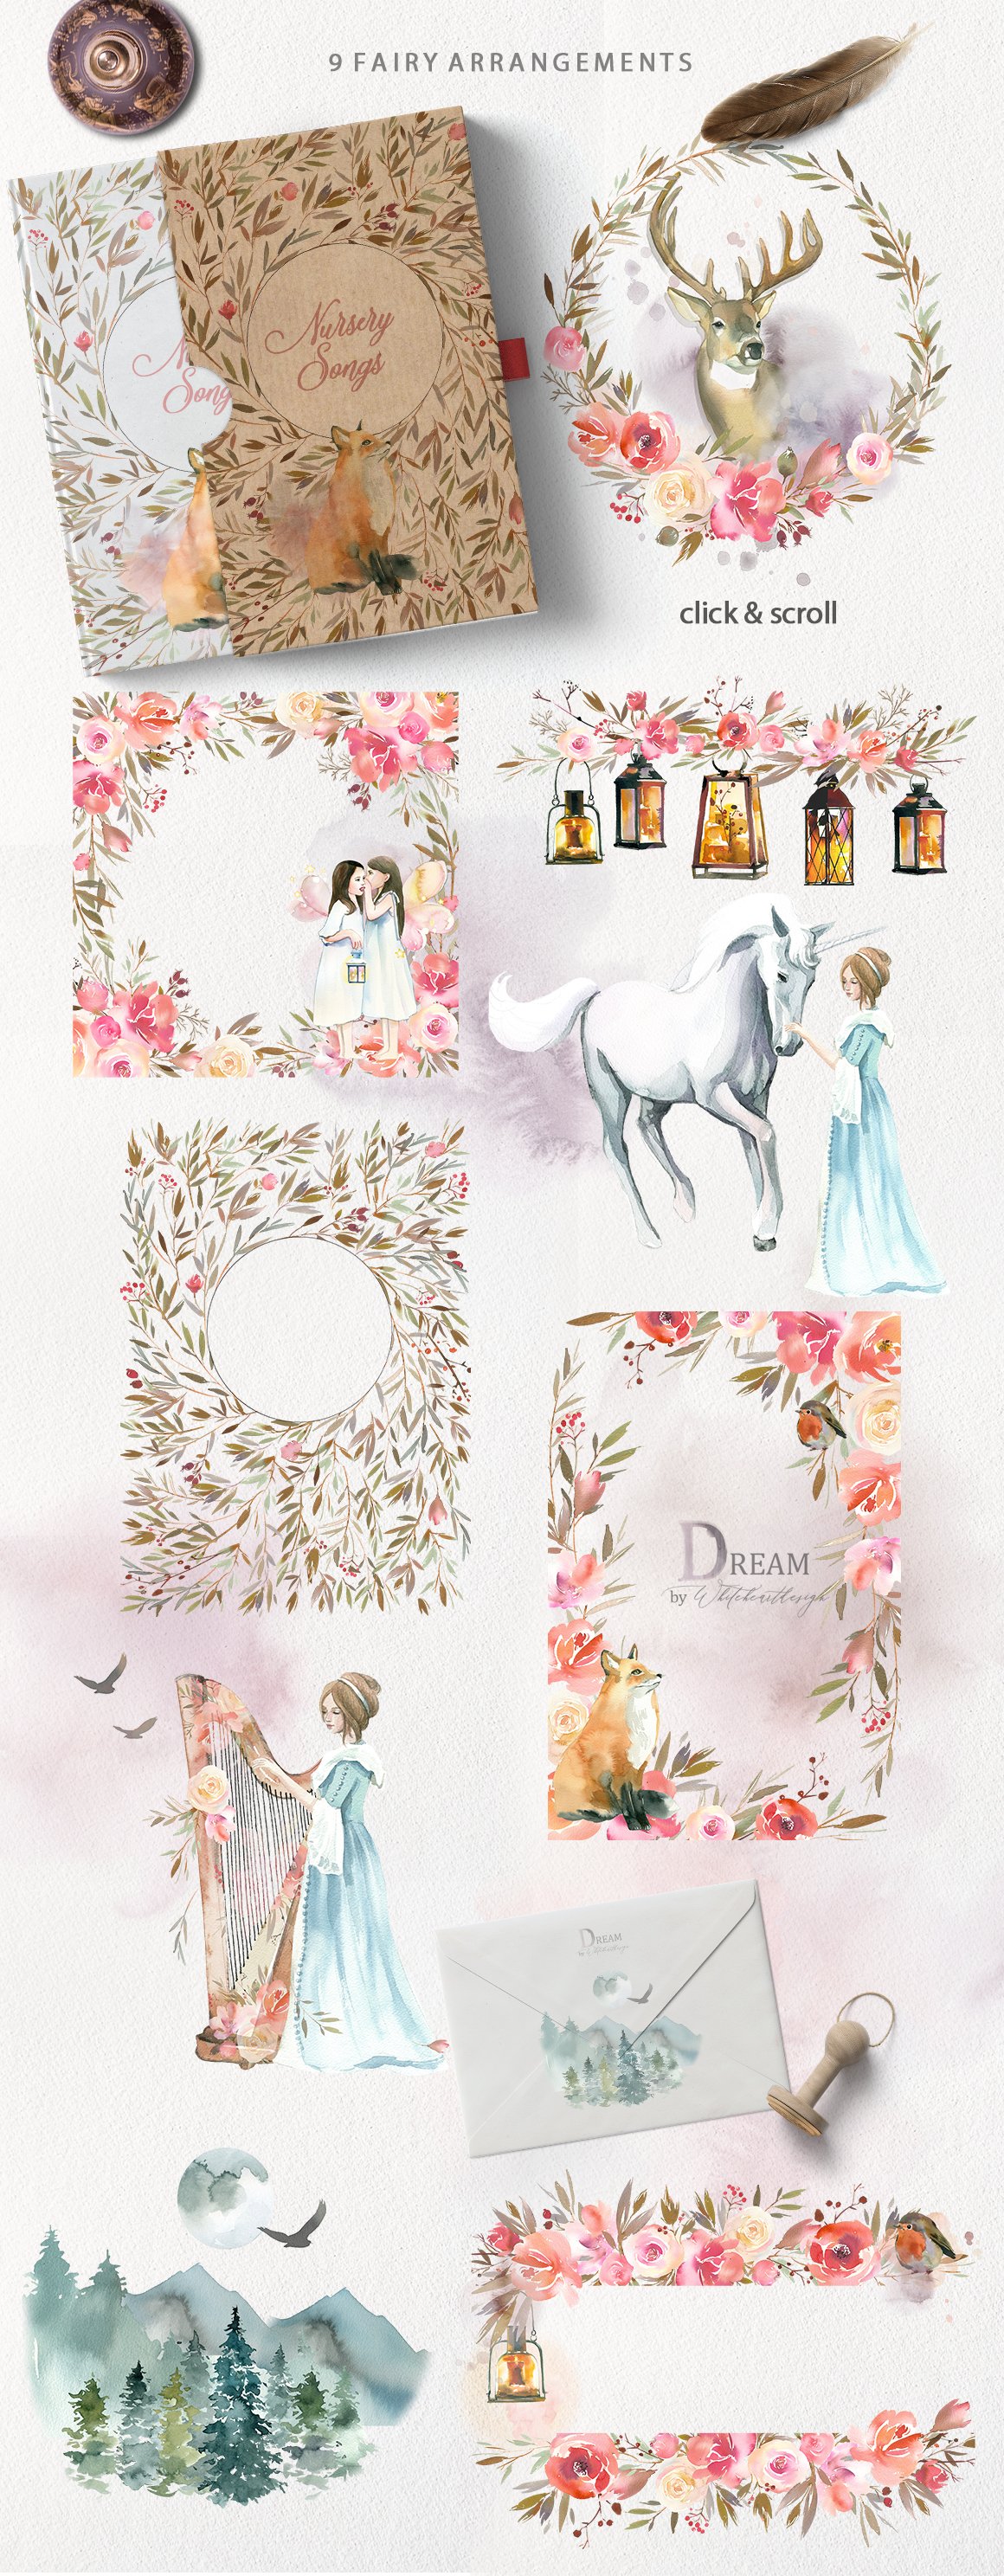 美丽的梦幻童话手绘动植物水彩插画合集&水墨纹理 dream – fairy